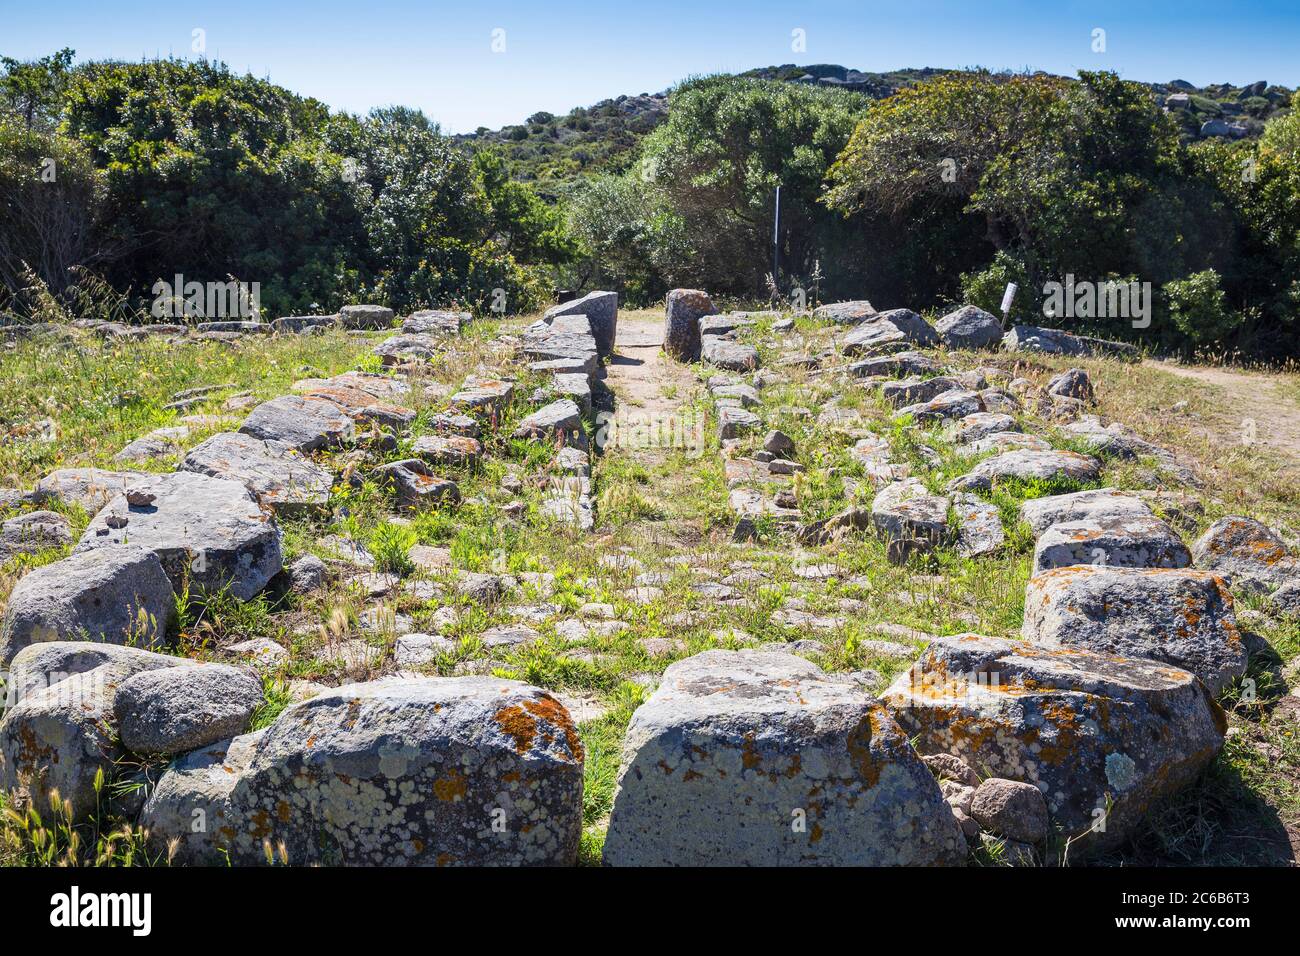 Lu Brandali sito archeologico, la tomba del Gigante, Santa Teresa Gallura, Sardegna, Italia, Mediterraneo, Europa Foto Stock